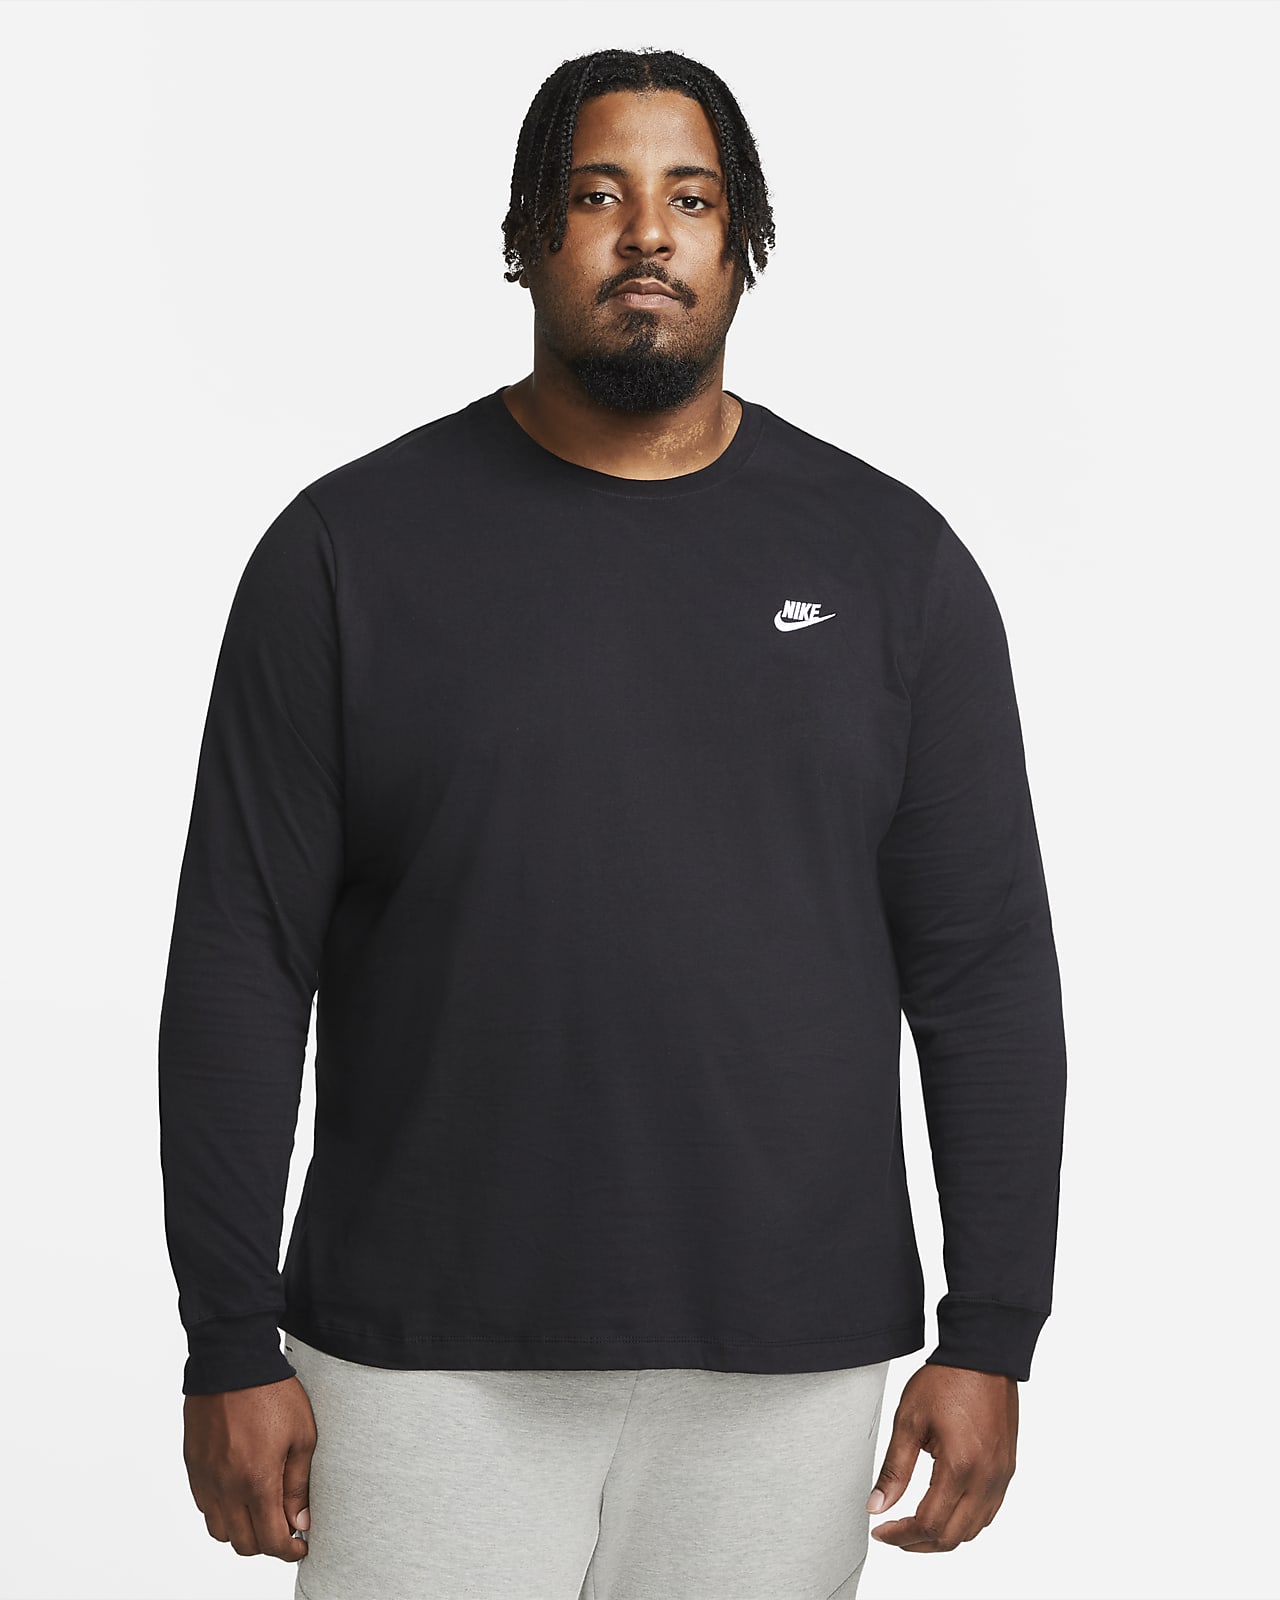 Thereby Contradiction Ritual Nike Sportswear Men's Long-Sleeve T-Shirt. Nike LU